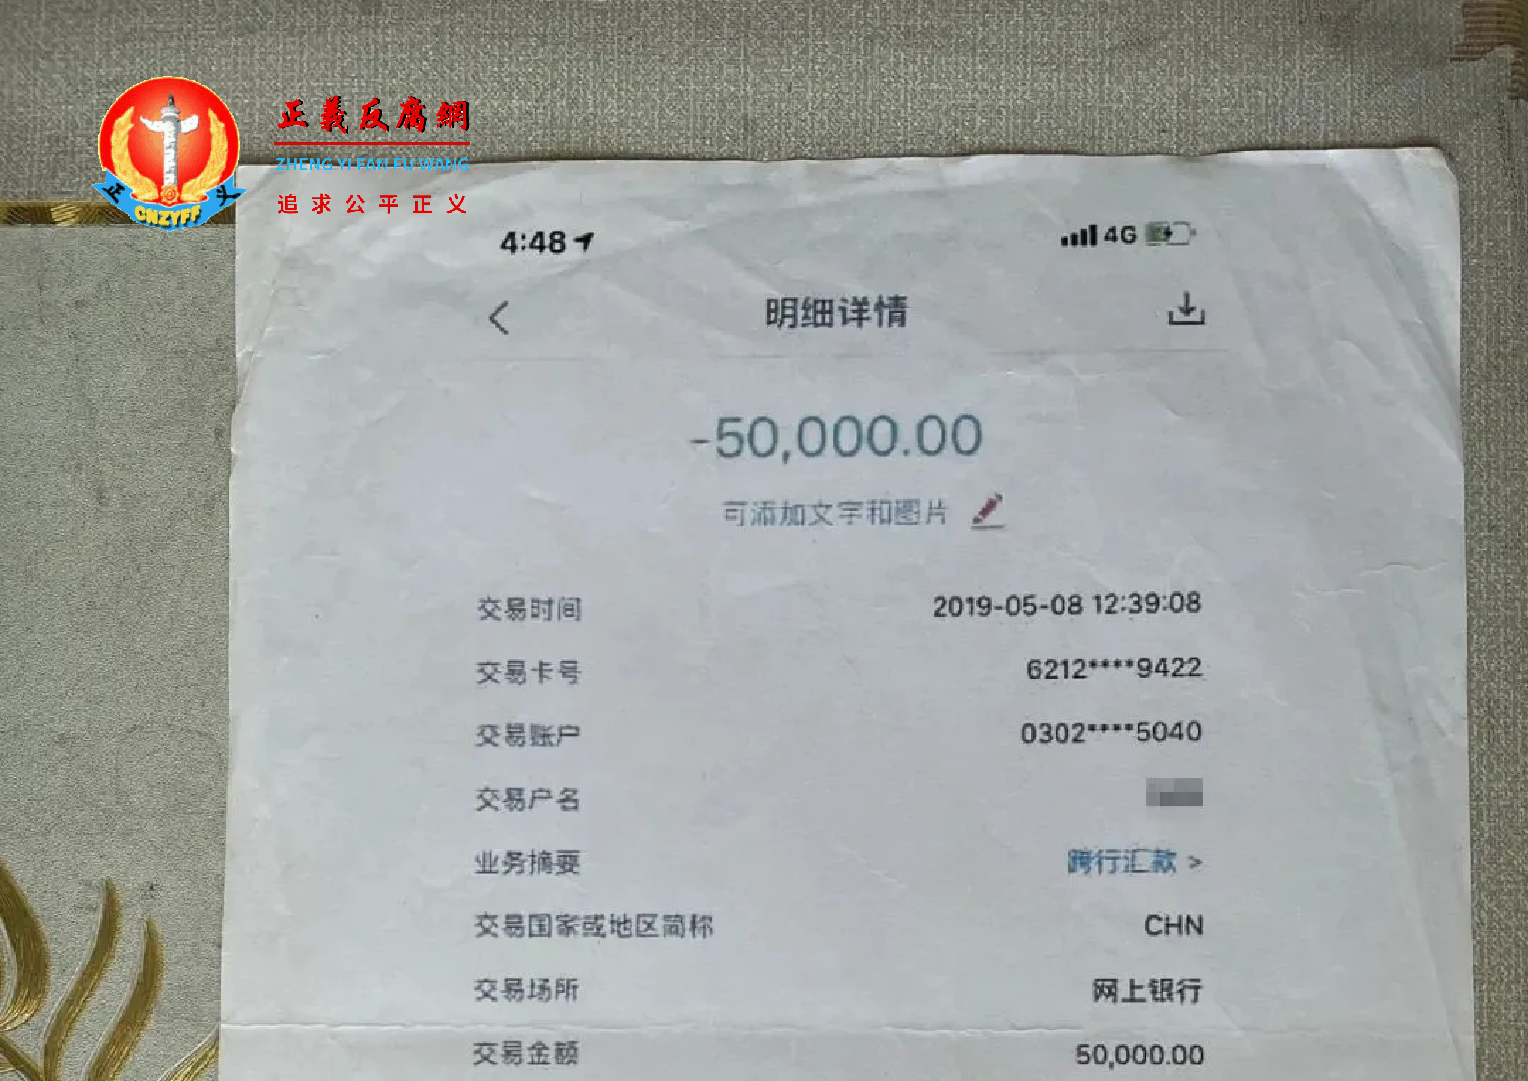 林冬兰的朋友按照办案警察王红章提供的账户转账5万元的记录.png